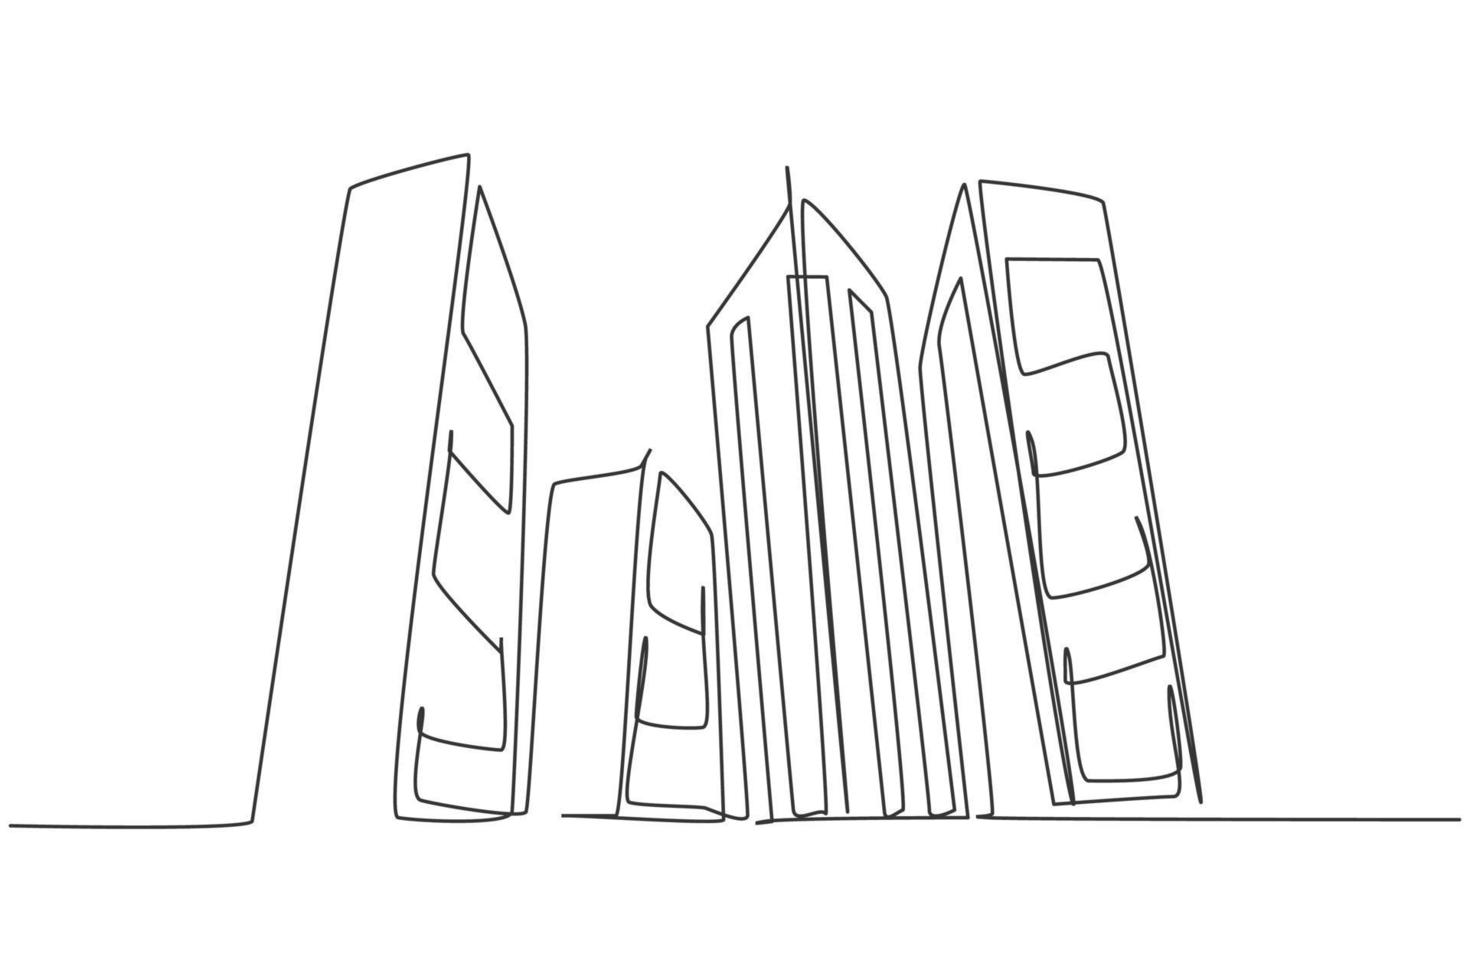 kontinuerlig enradsteckning av höga skyskraporbyggnader i storstad. affärskontor byggnad distrikt handritad minimalistiska koncept. modern enkel linje rita design vektor grafisk illustration